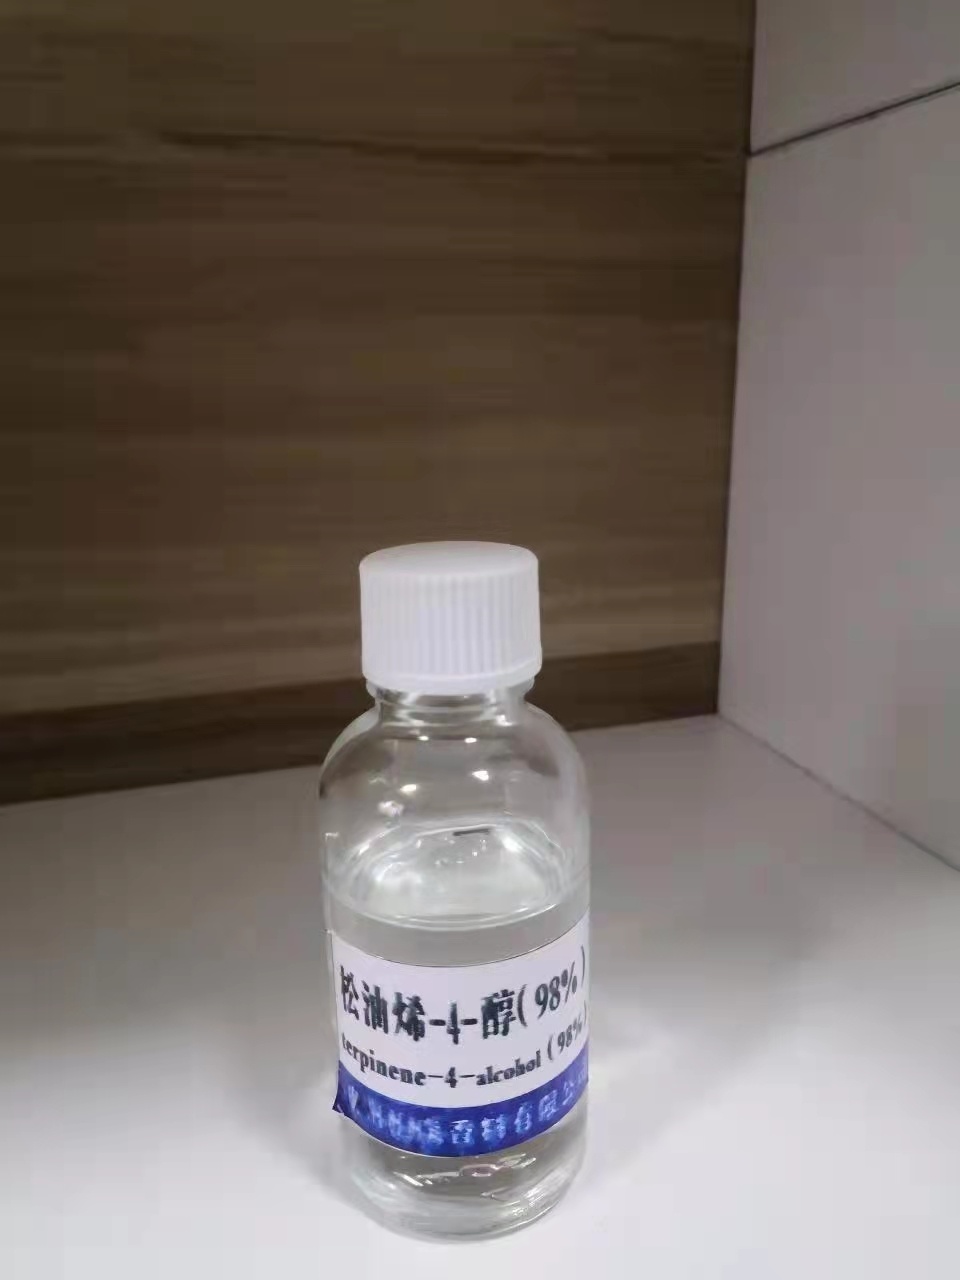 天然4-松油烯醇